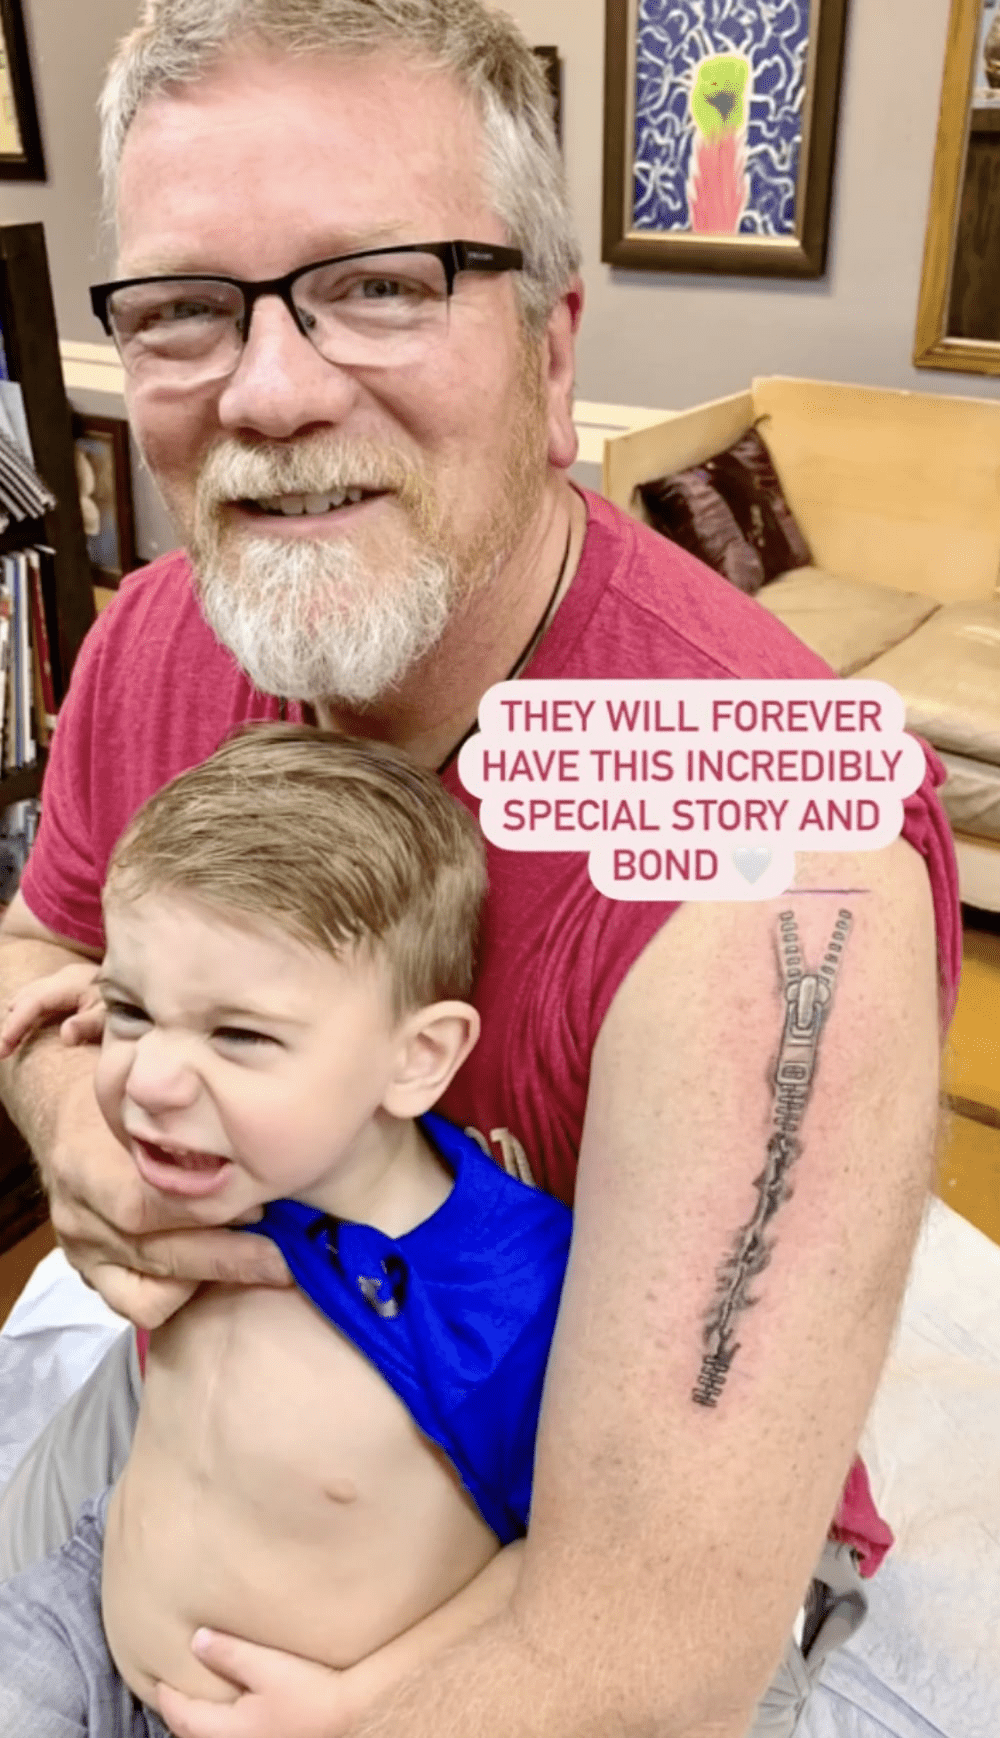 外公刻意紋上與索耶疤痕相同的圖案。（圖片來源：Instagram@rebekahsfamily）